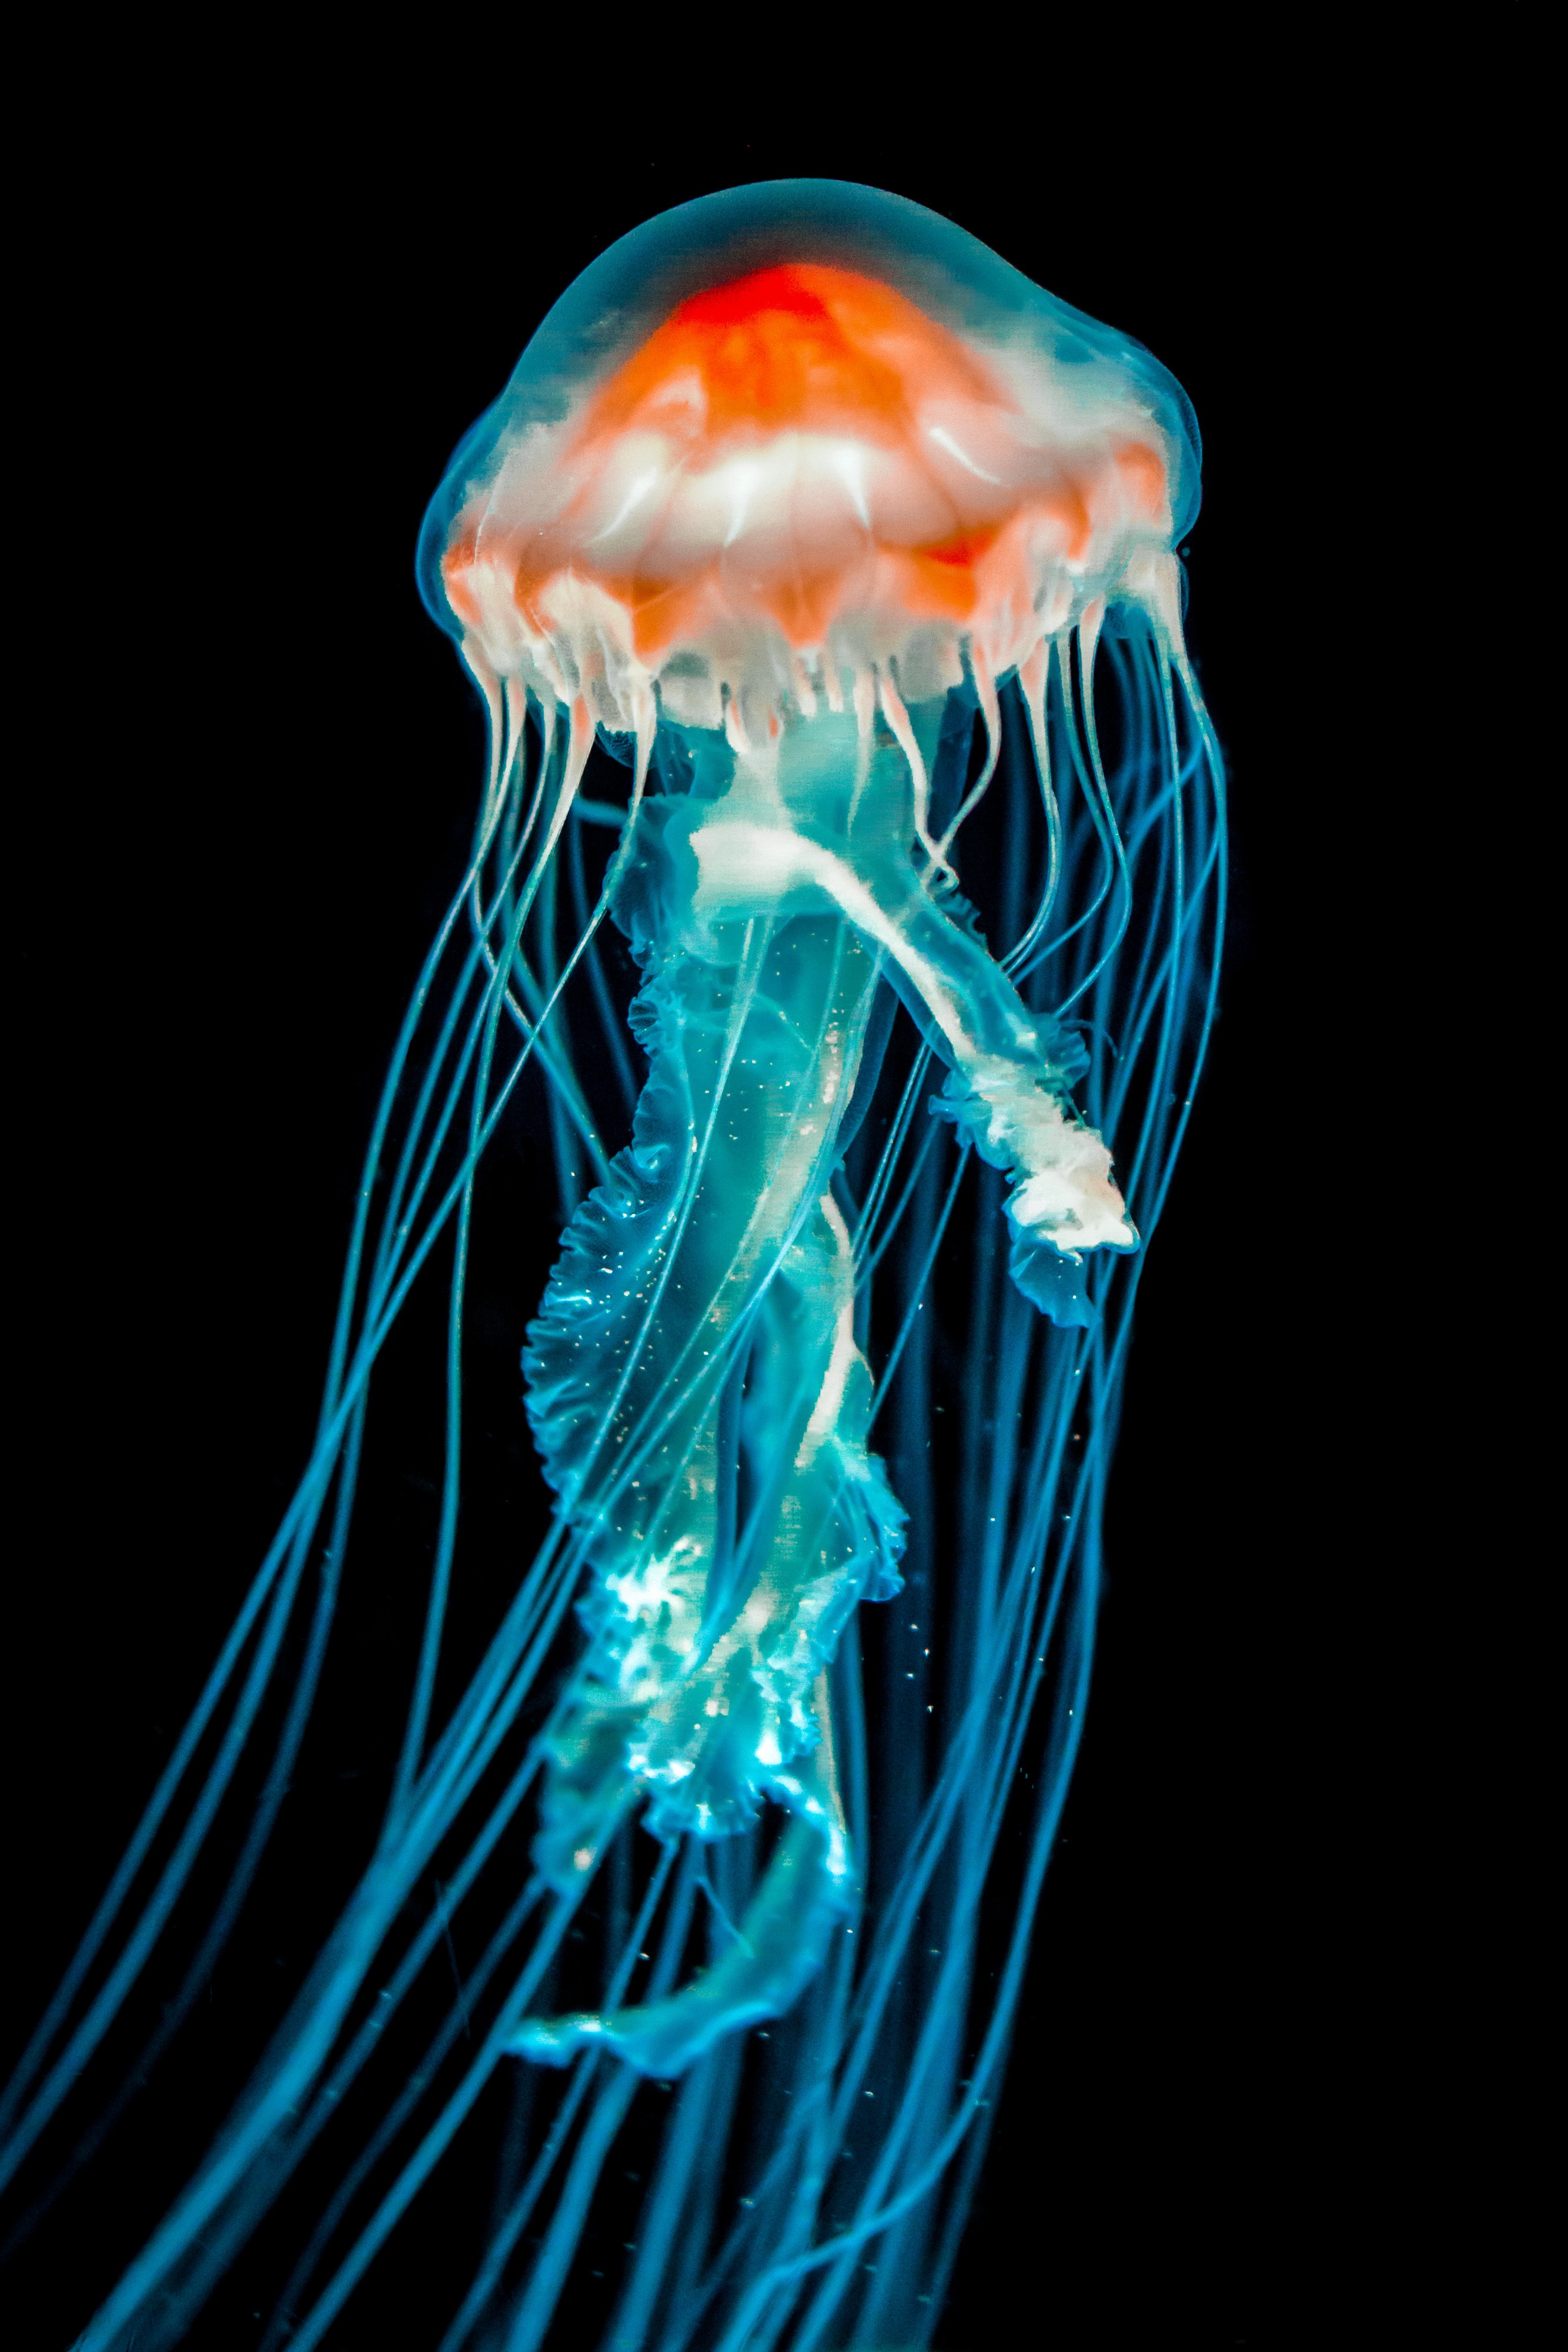 jellyfish, tentacle, dark, animals, black, underwater world